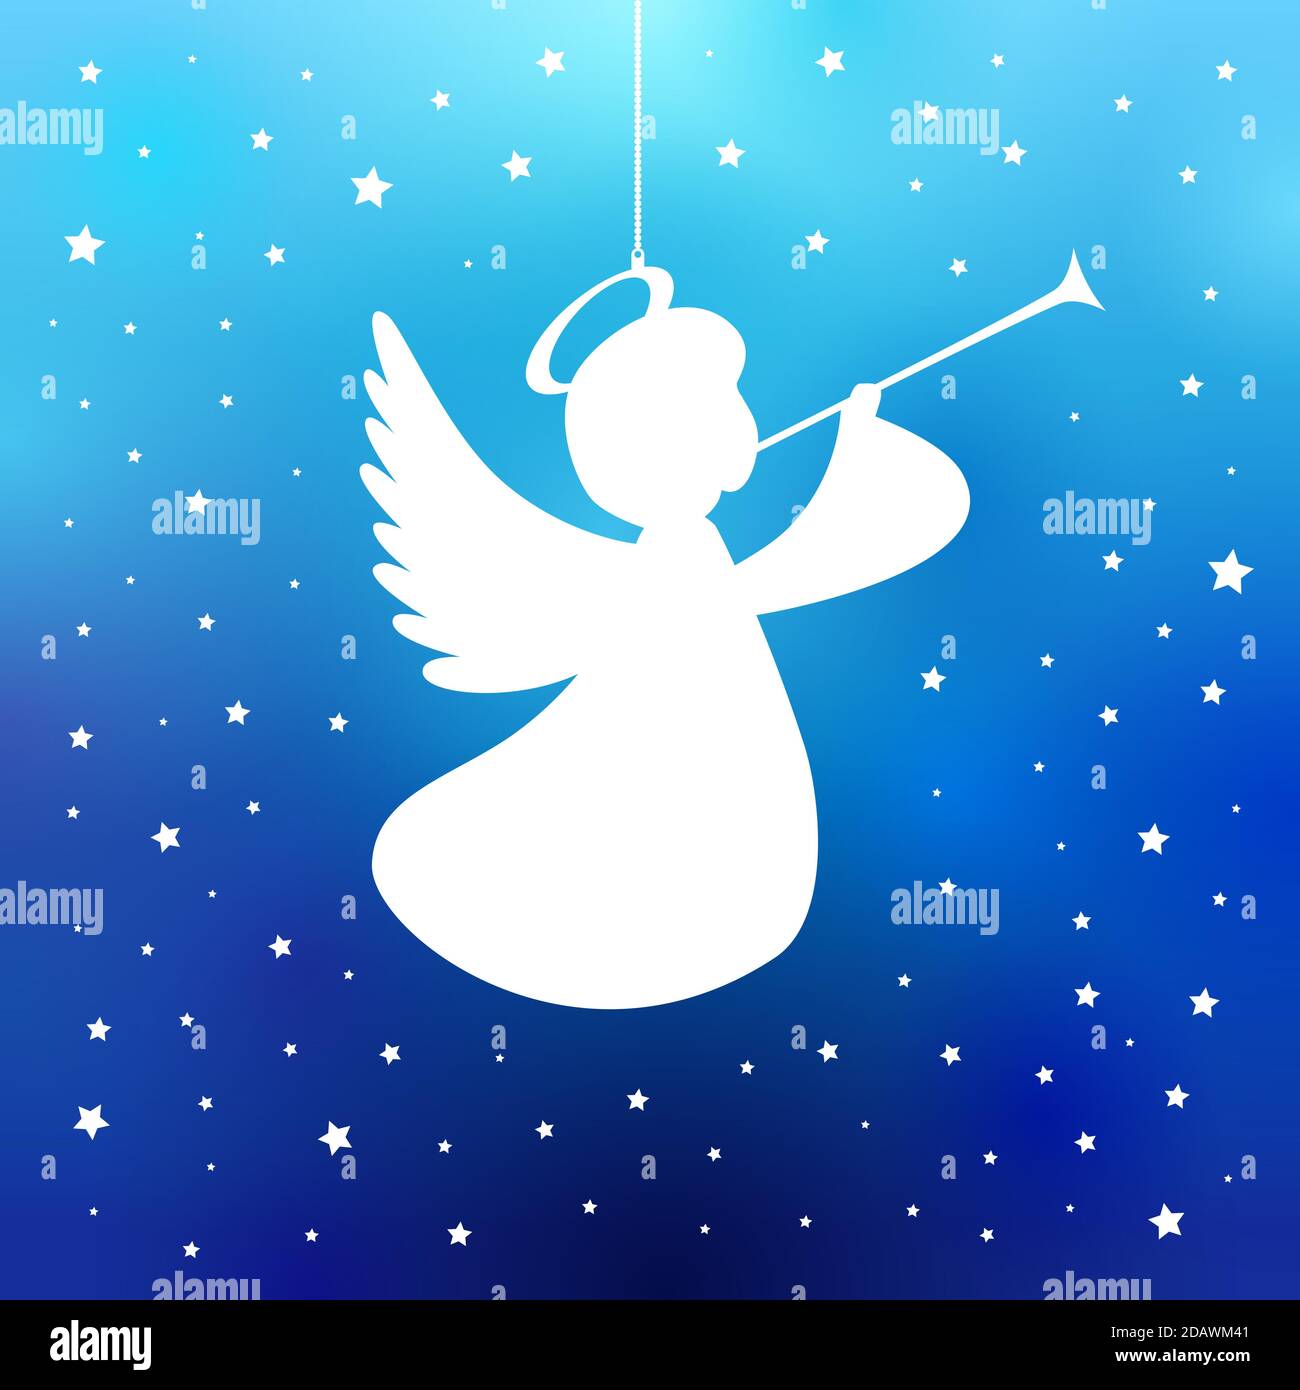 Angelo volante con tromba su sfondo blu marino. Angelo bianco isolato con silhouette tromba stellata, Merry Christmas card. Illustrazione vettoriale Illustrazione Vettoriale